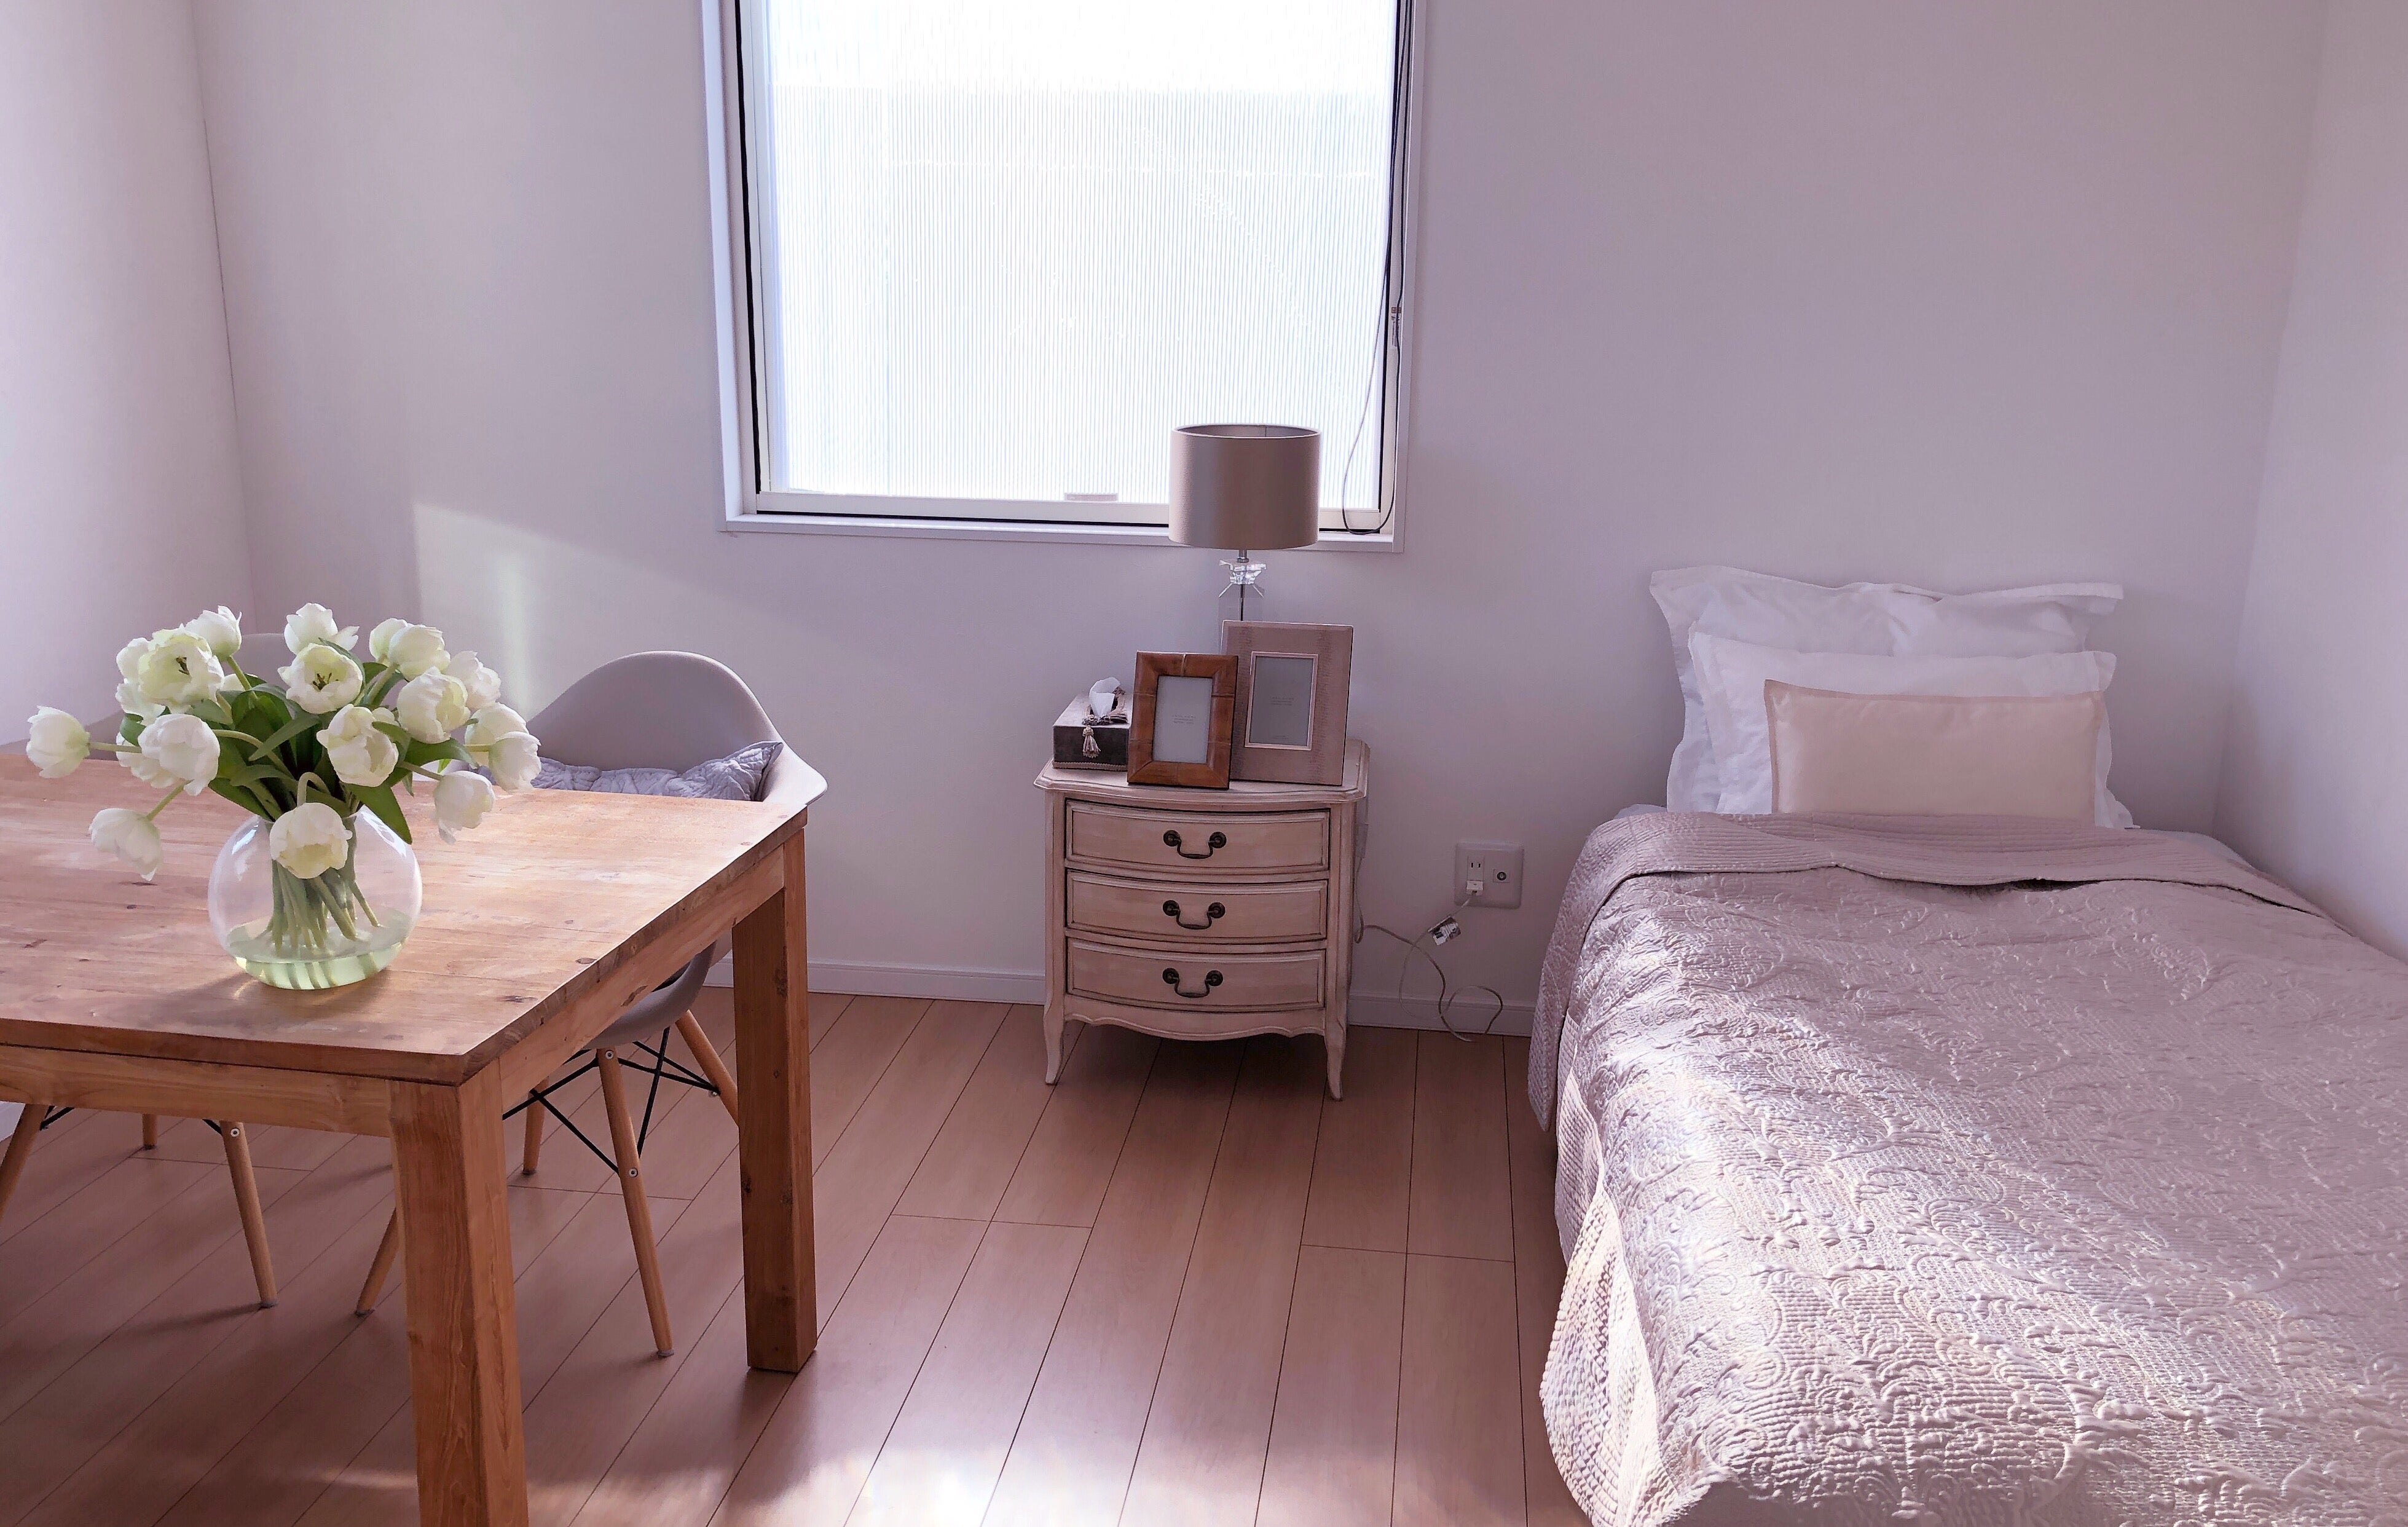 ZARAホームのベッドカバー新調しました | シンプルで心地よい暮らしづくり